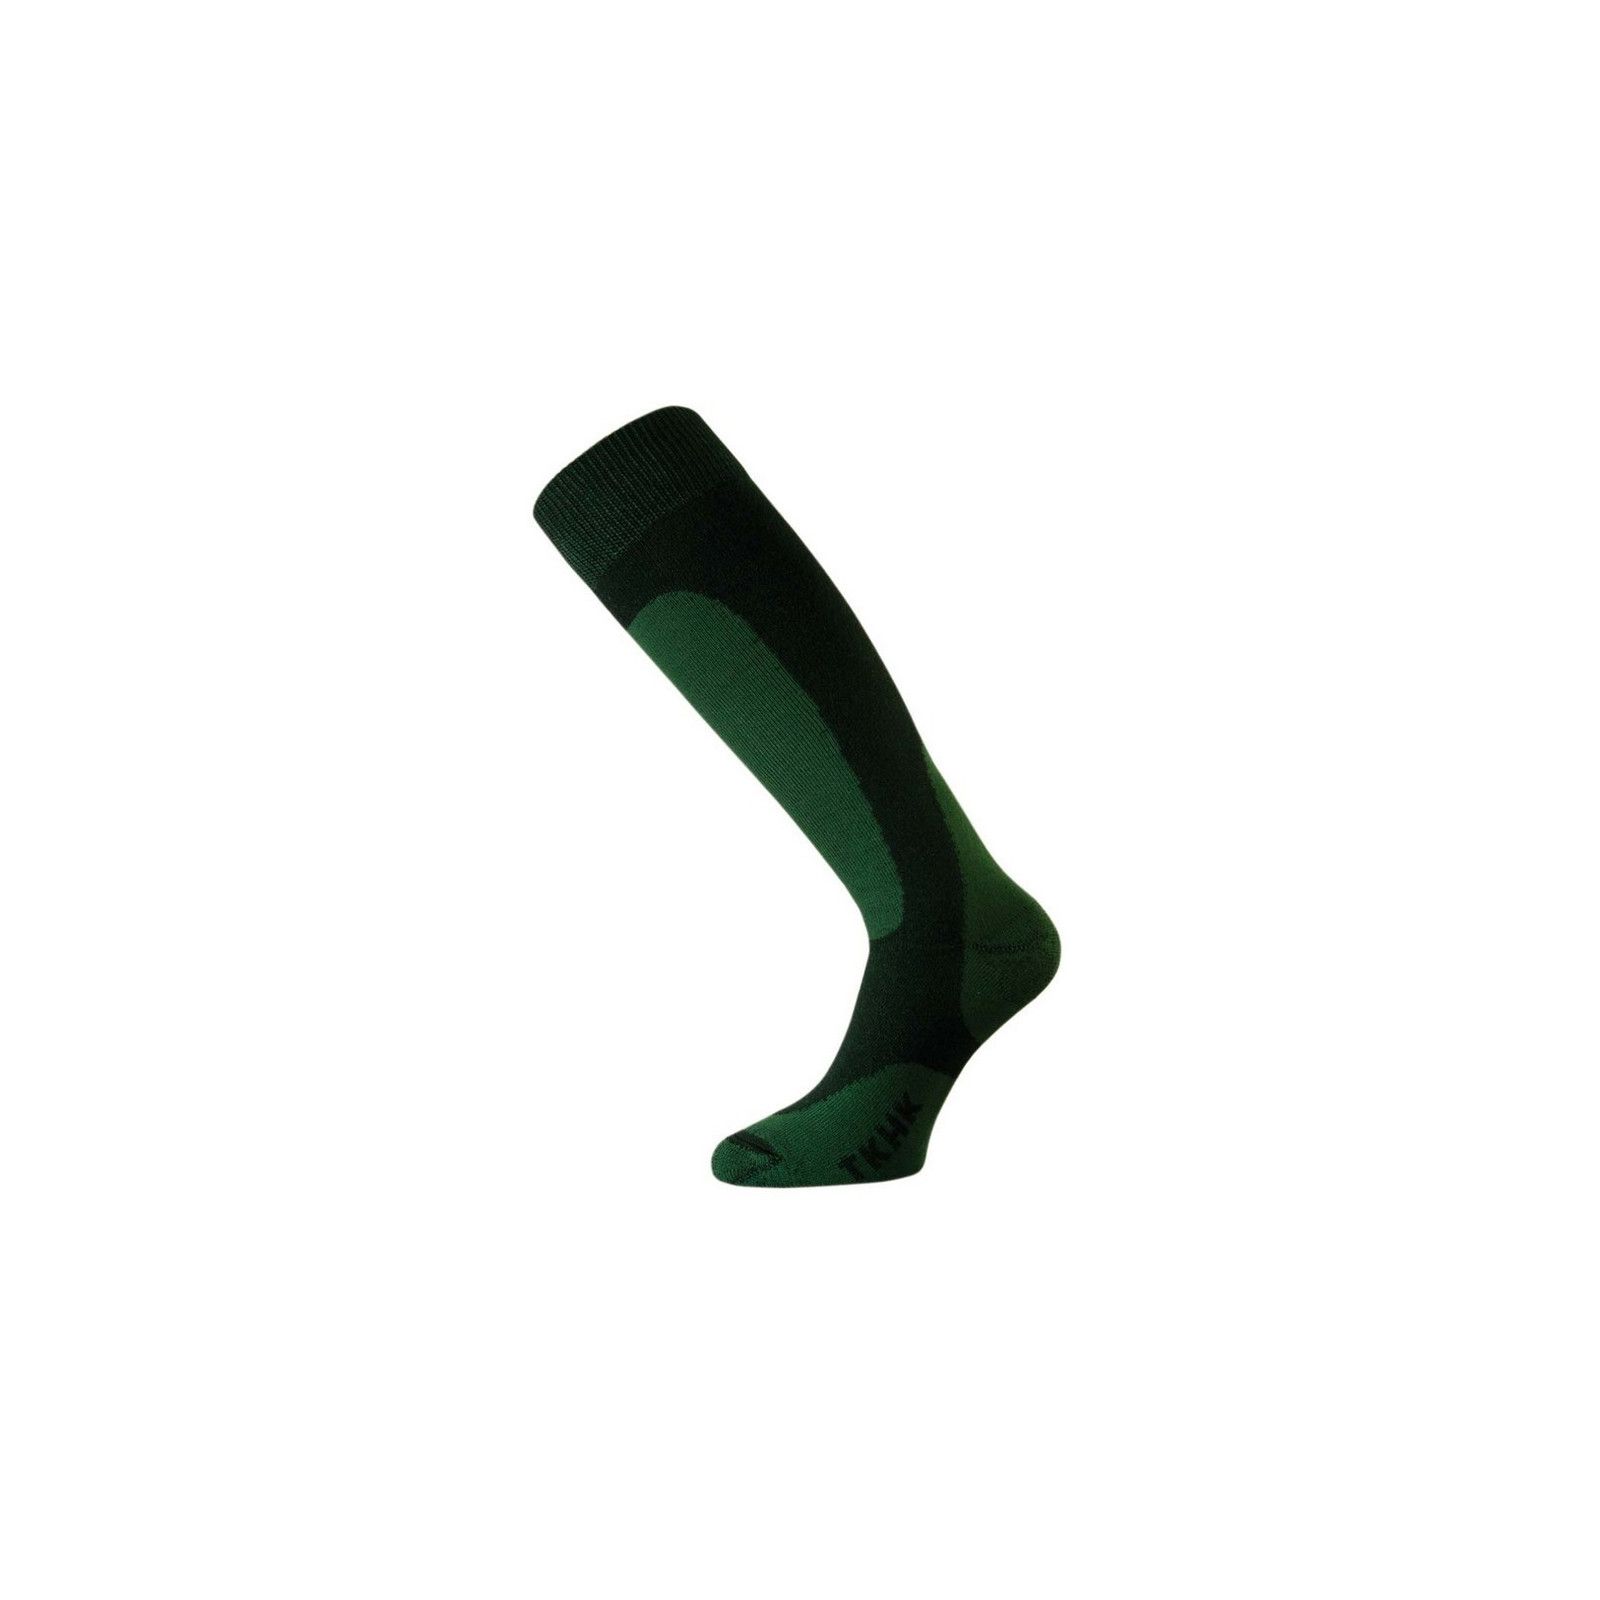 calcetin para invierno verde marca lasting